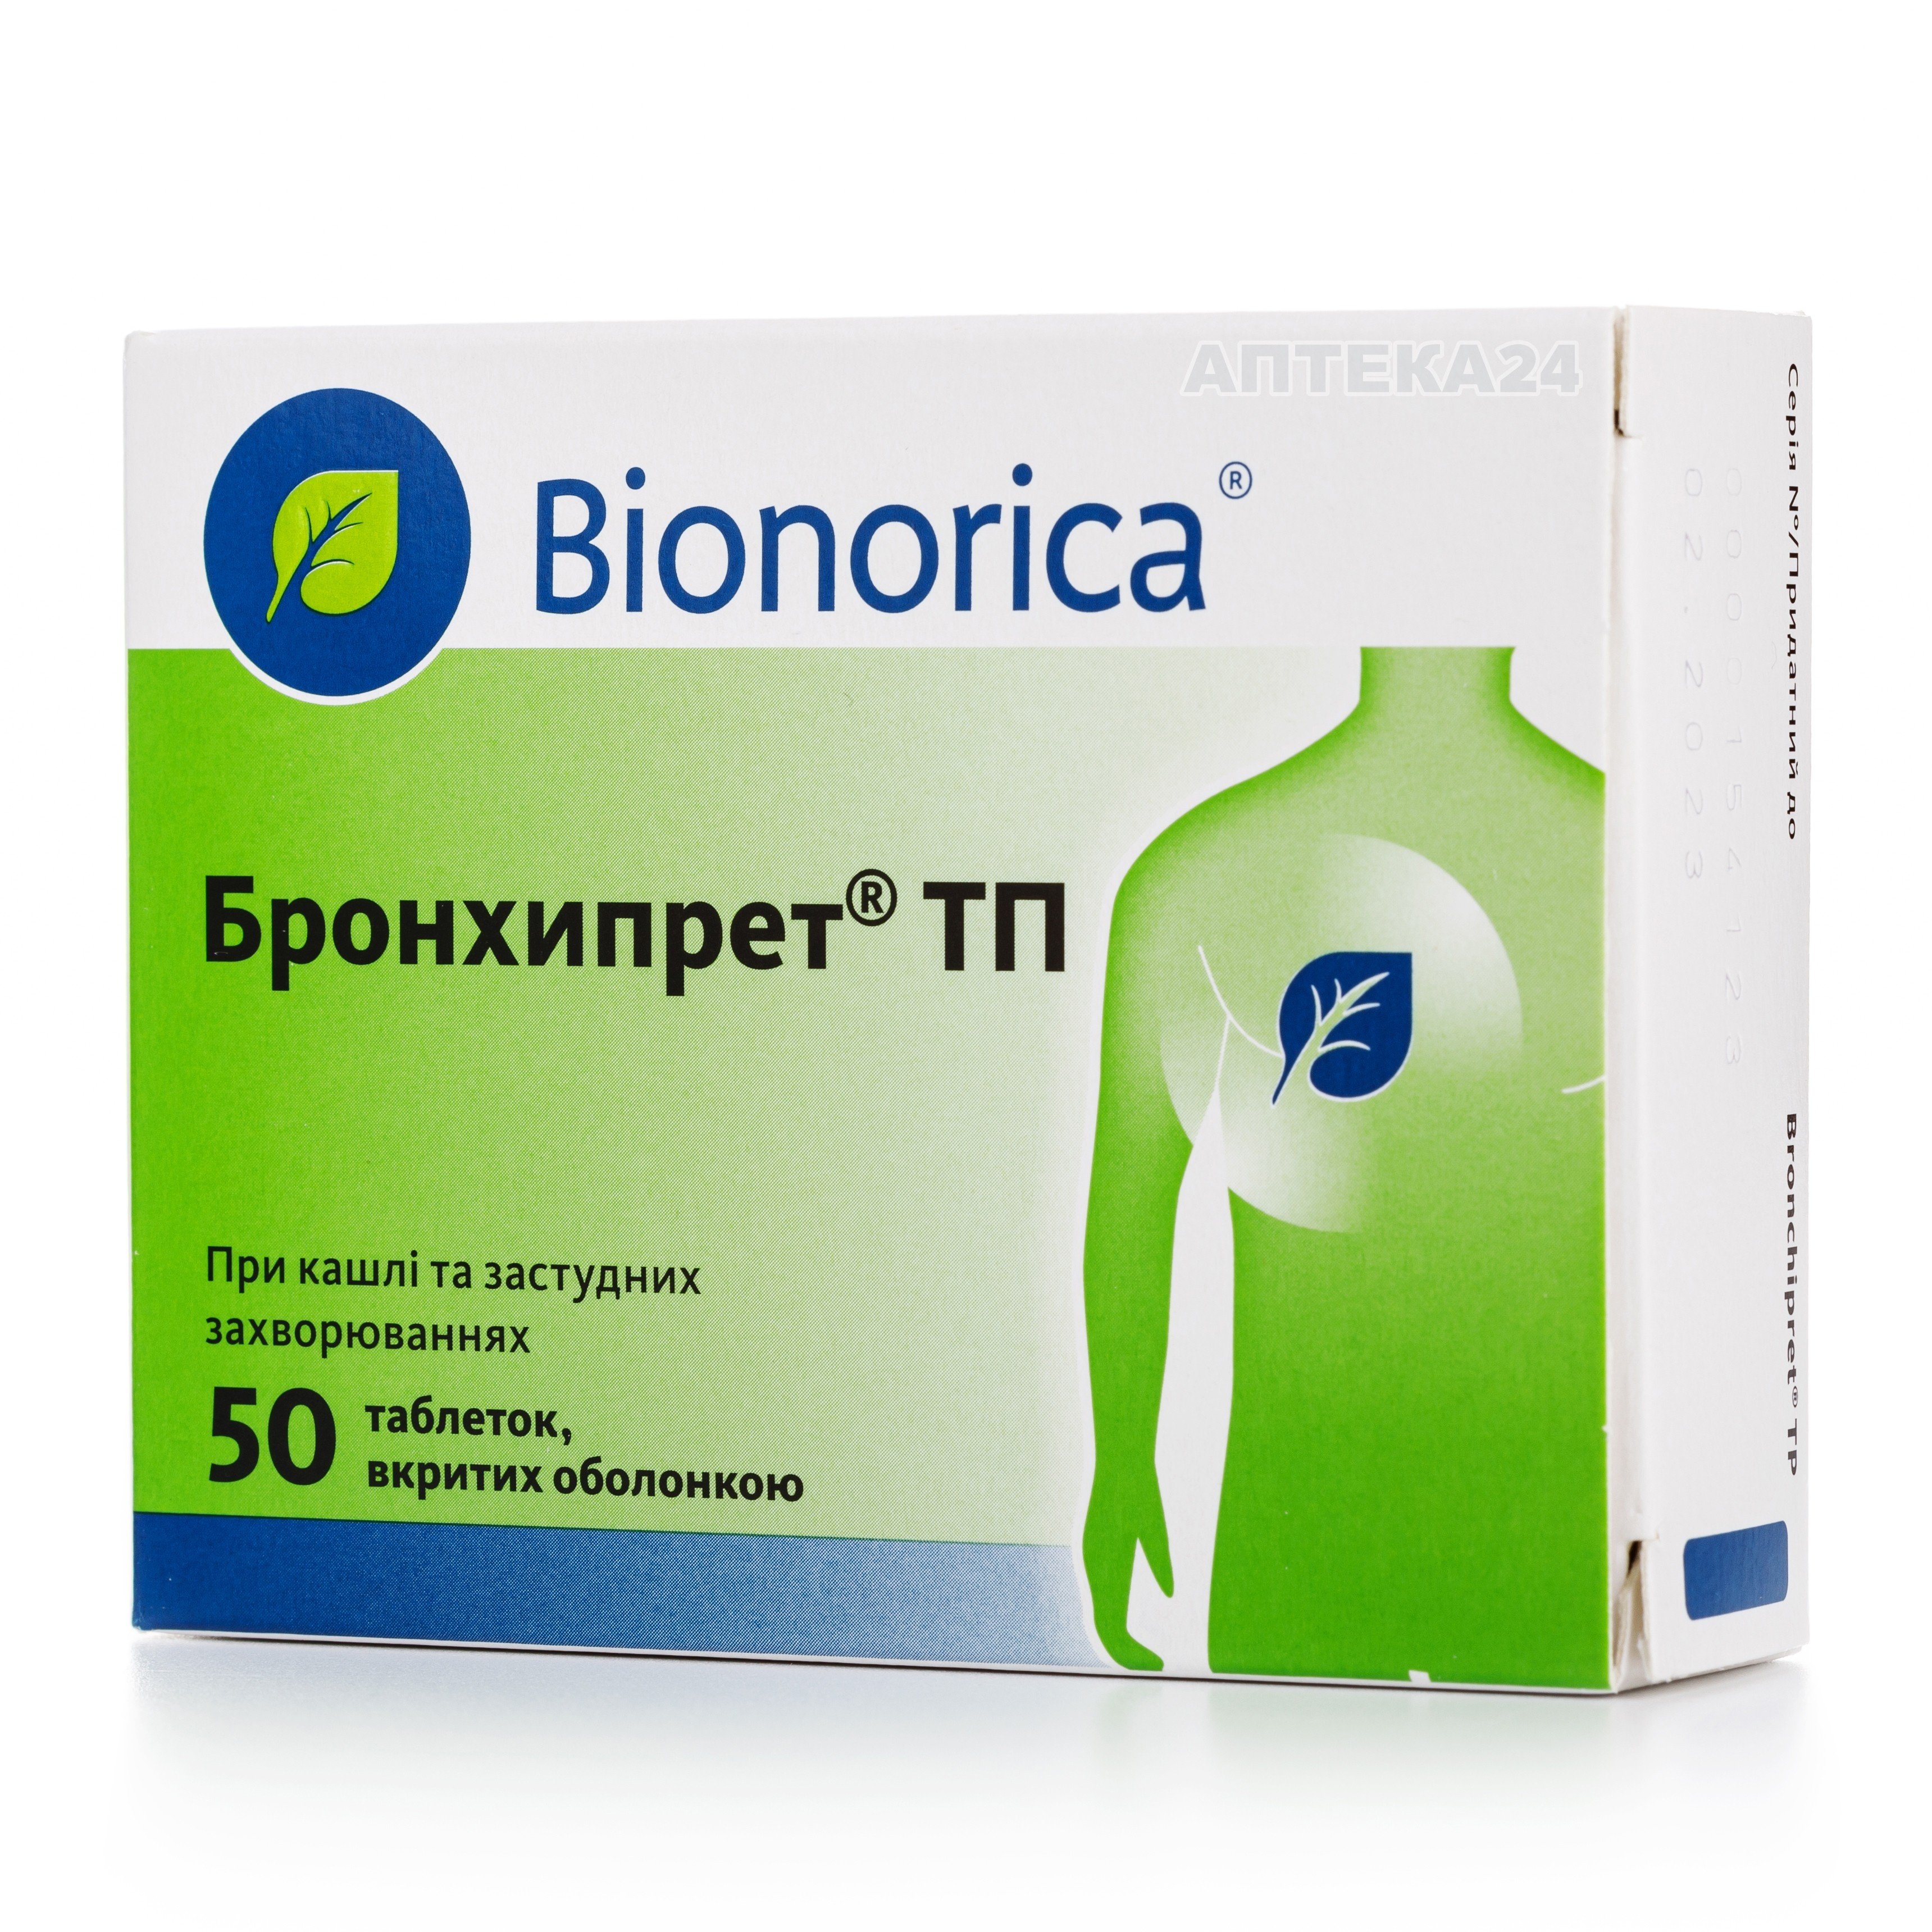 Чесні відгуки про Бронхипрет ТП таблетки при кашлі та застуді, 50 шт .